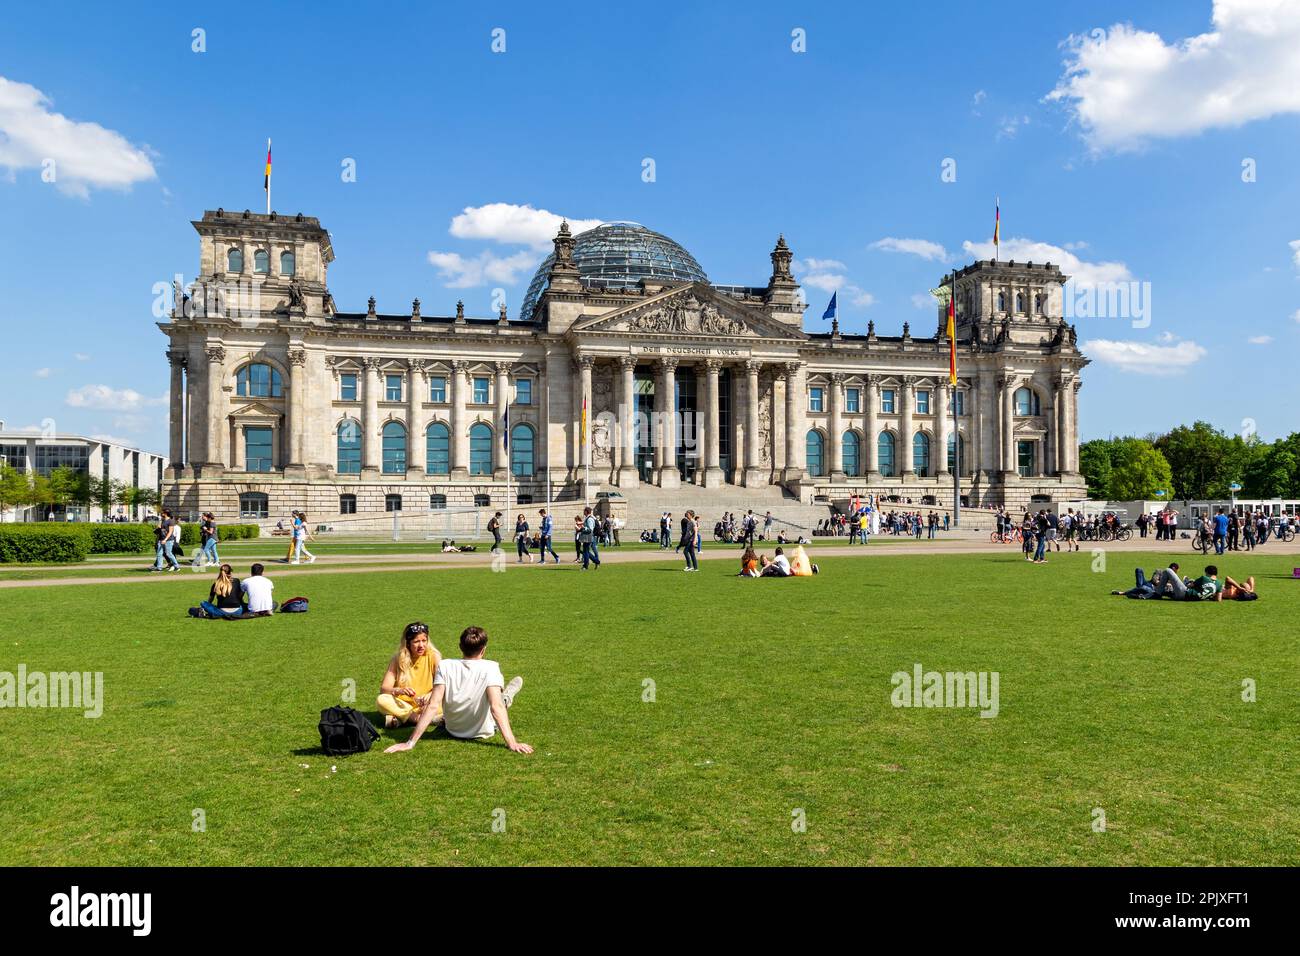 Persone che si rilassano sull'erba di fronte all'edificio del Reichstag, sede del Parlamento tedesco (Deutscher Bundestag). Berlino, Gemany - 28 aprile 2018 Foto Stock